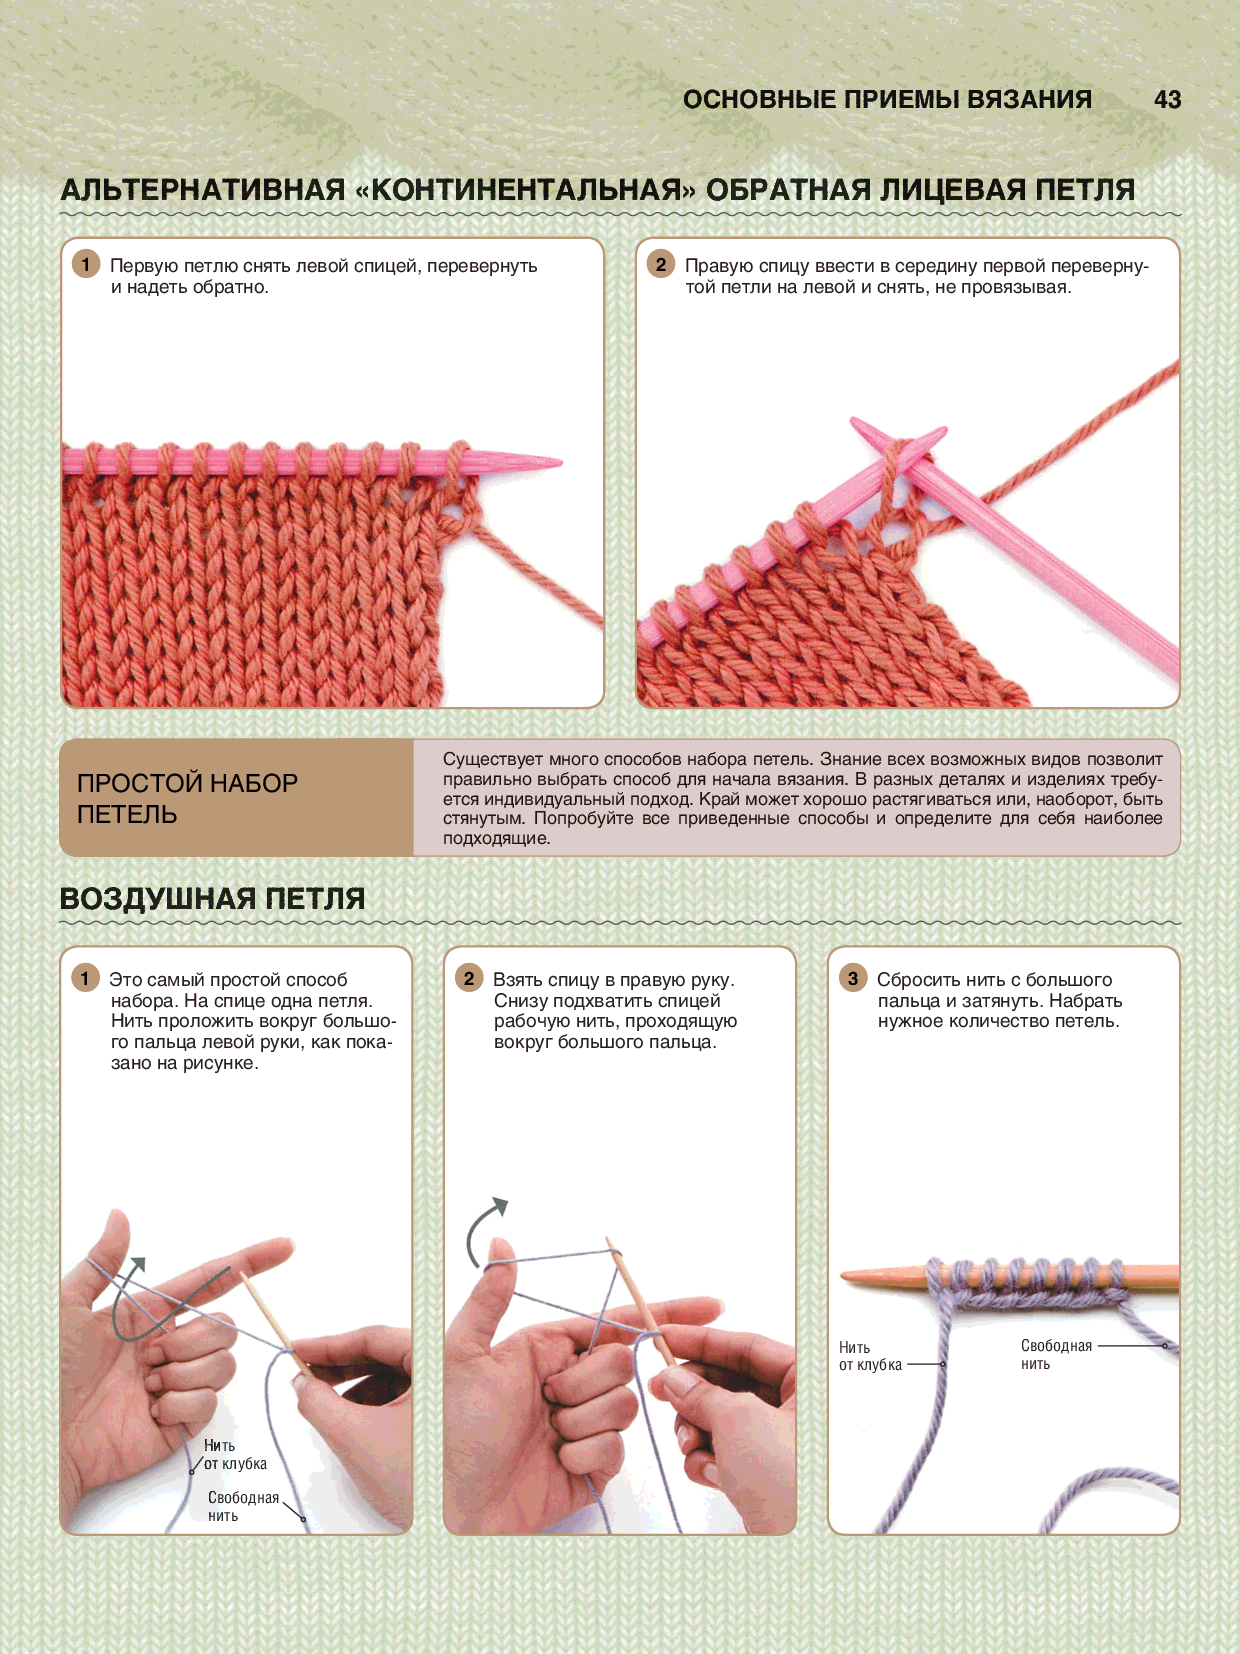 1 урок вязания. Уроки по вязанию для начинающих с первой петли спицами. Лицевое вязание спицами для начинающих пошагово. Вязание спицами для начинающих лицевые петли пошагово. Вязание для начинающих спицами самое простое пошагово.